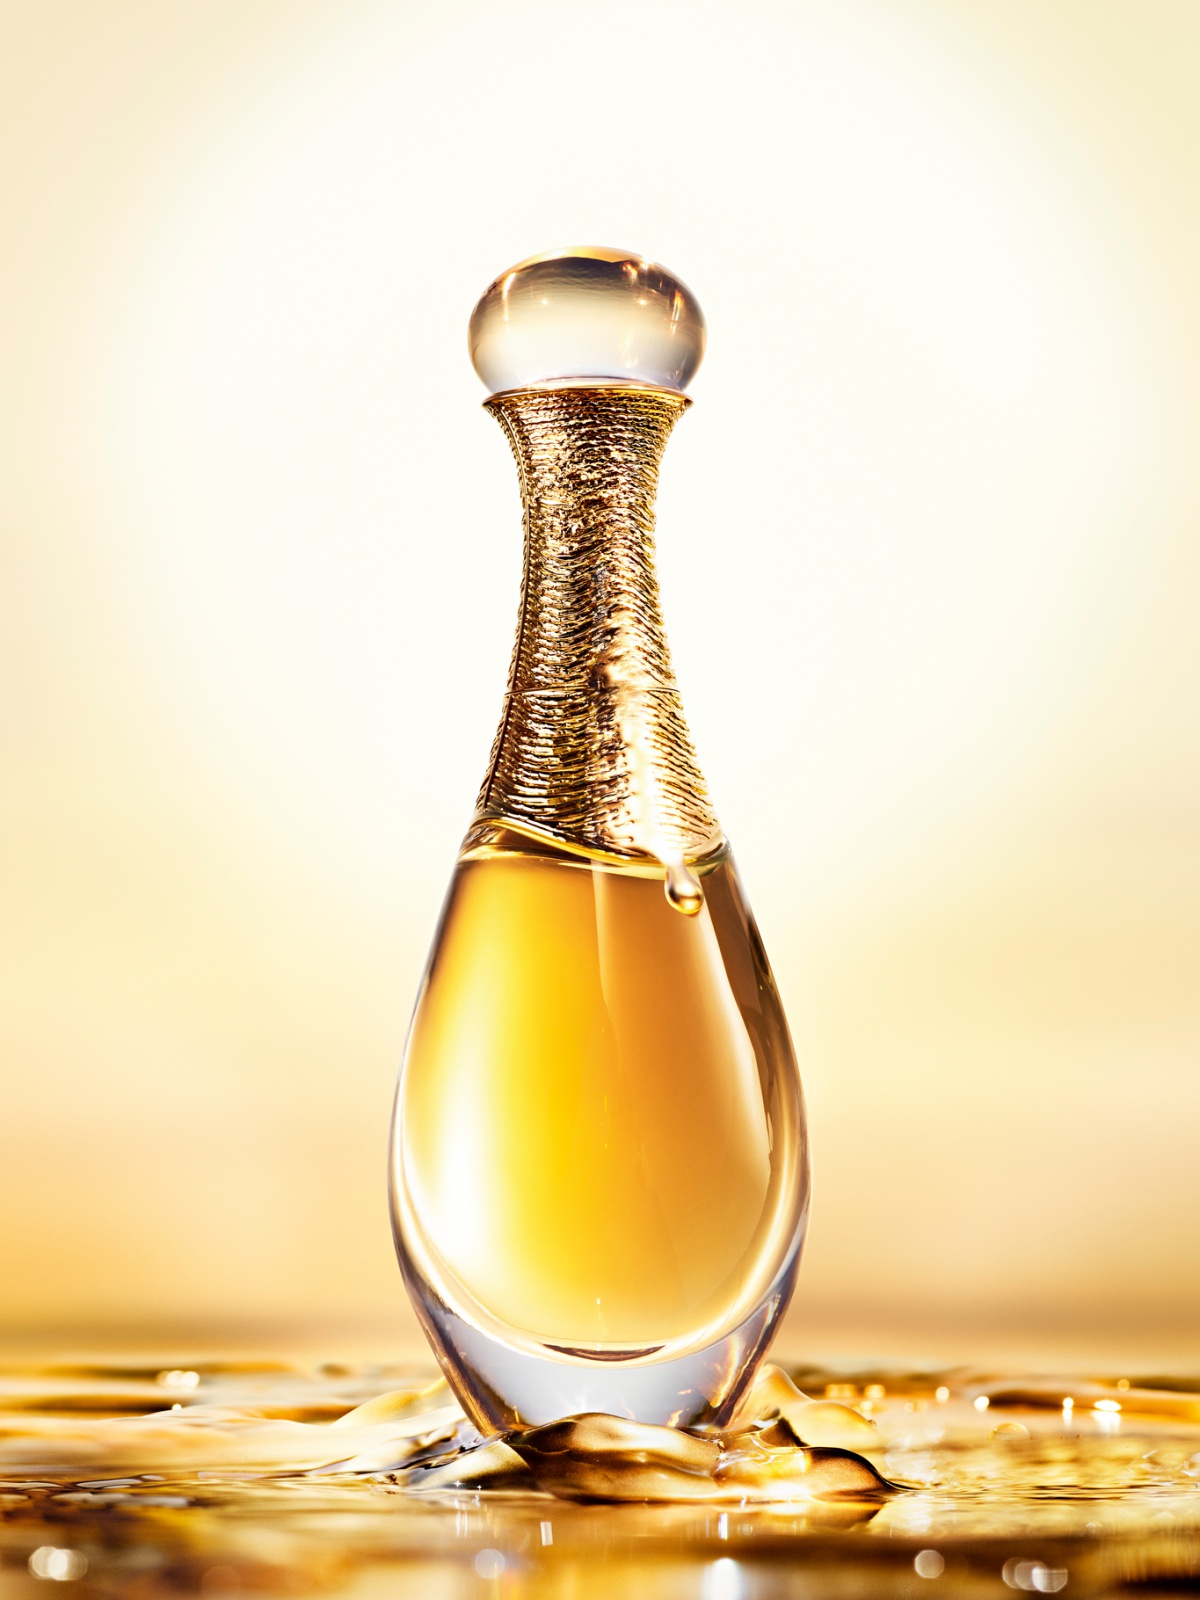 Dior J'adore L'Or Essence de Parfum